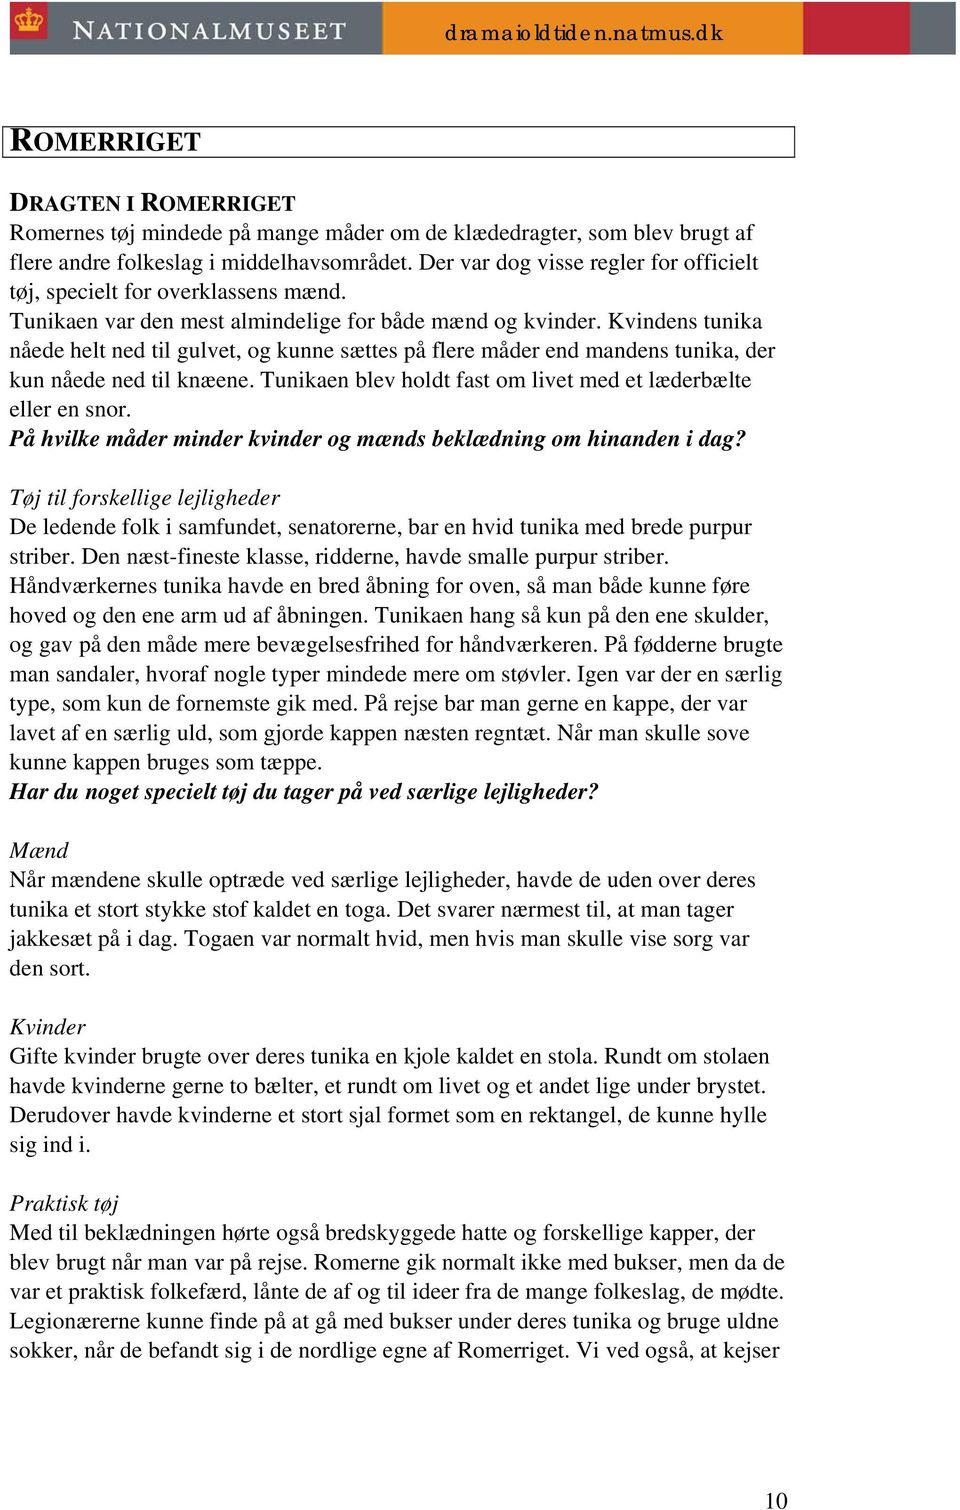 dramaioldtiden.natmus.dk DANMARK - PDF Gratis download